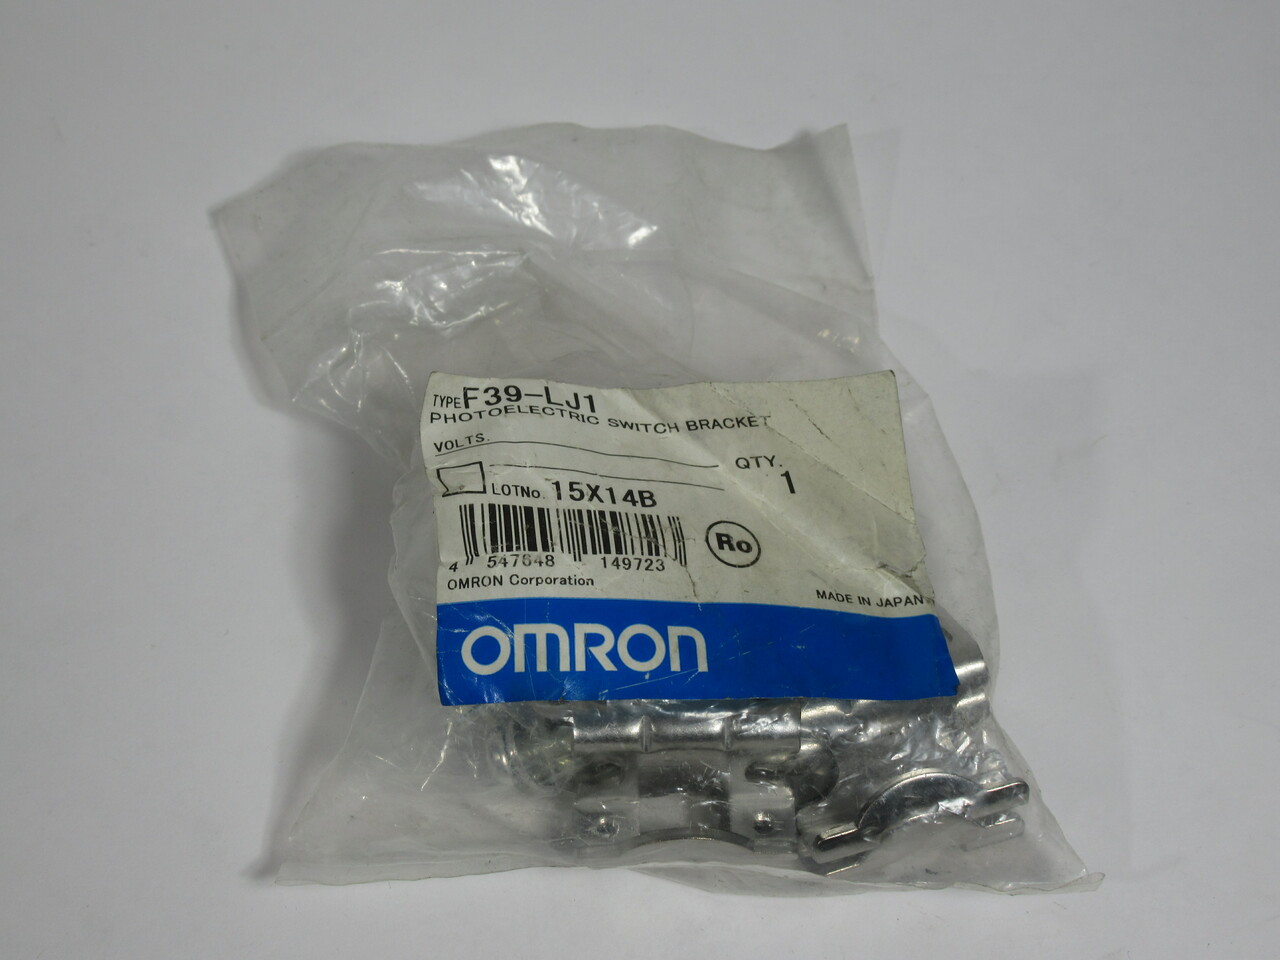 Omron F39-LJ1 Photoelectric Switch Bracket *Damaged Bag* NWB